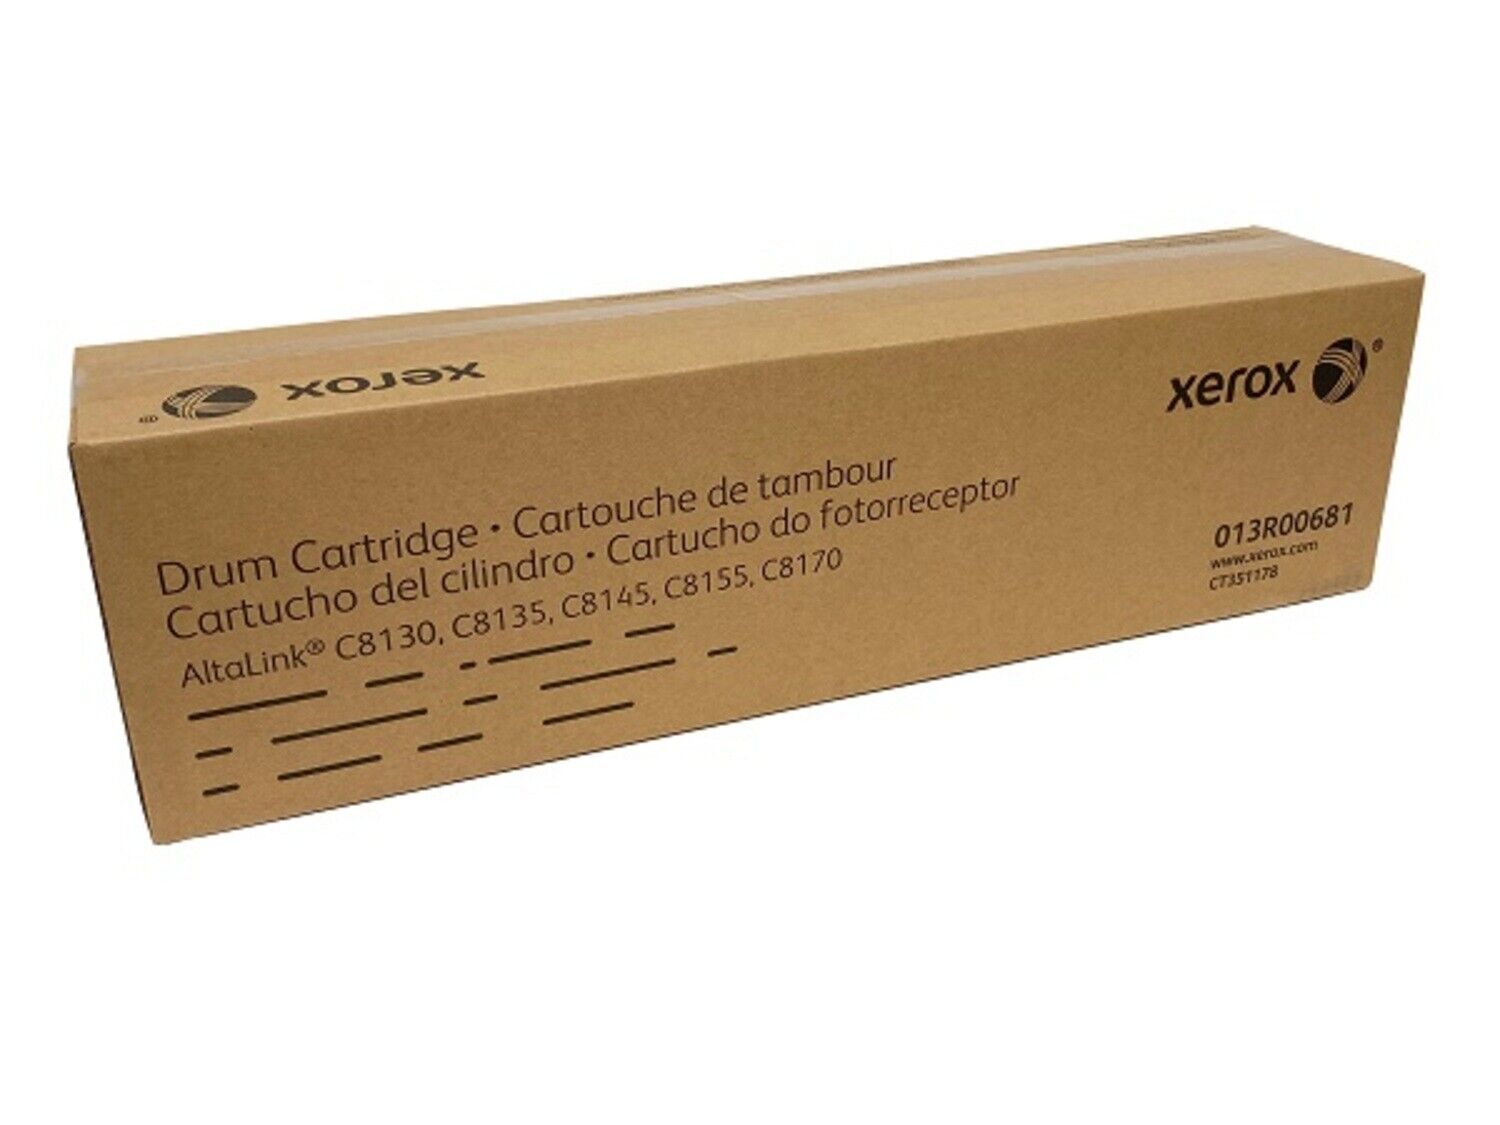 Genuine Xerox AltaLink C8130, 35, 45, 55, 70 Drum Cartridge (180,000 Yield)